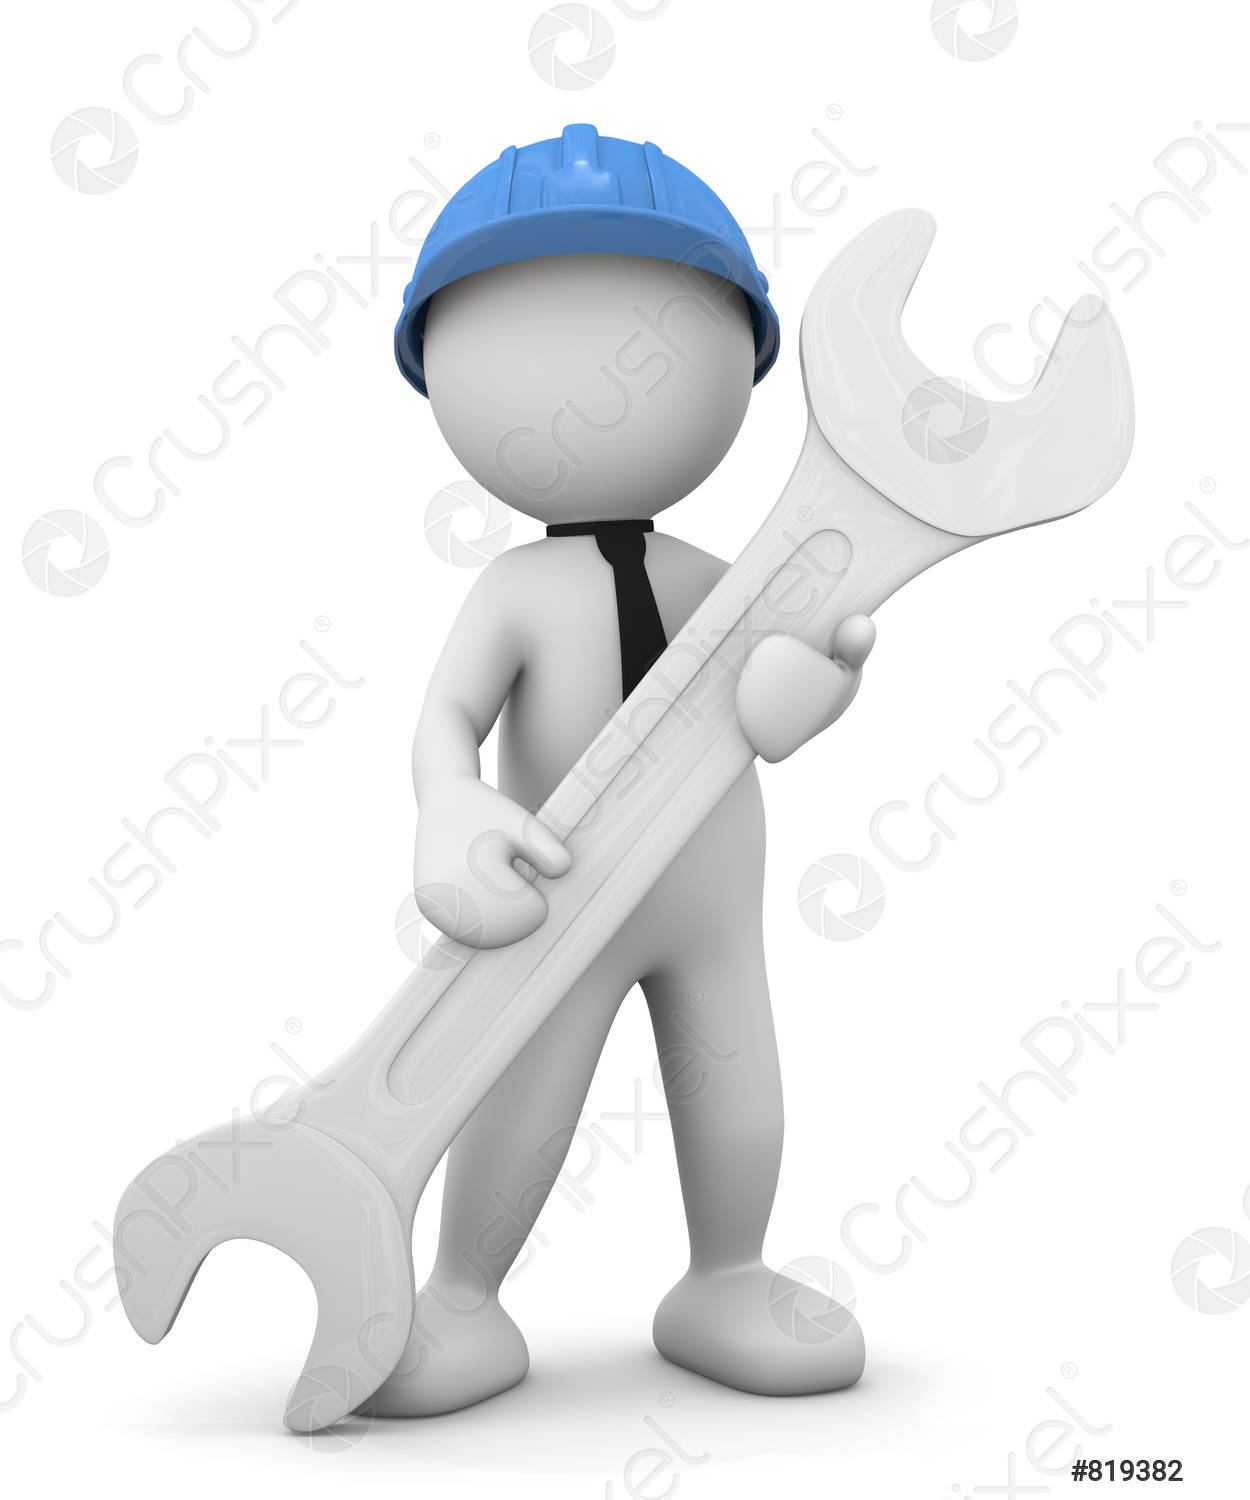 مركز الصيانة لاصلاح جميع الاجهزة المنزلية 01010916814 - مركز الصيانة المعتمد